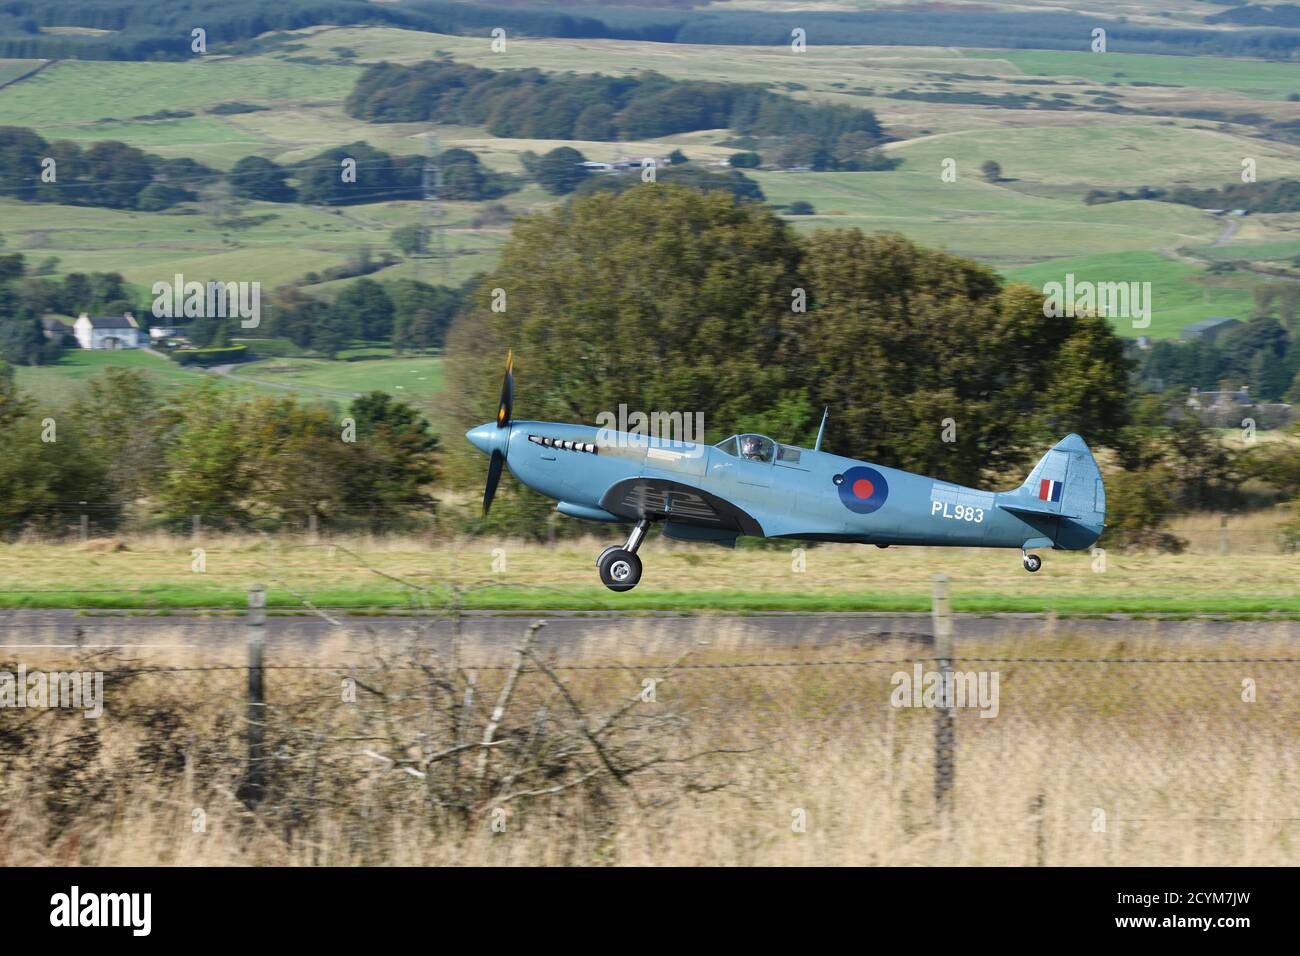 Un avion de la Seconde Guerre mondiale Spitfire part de l'aéroport de Cumbernauld, en Écosse, pour une visite du Royaume-Uni afin de célébrer la bataille d'Angleterre et le NHS. Banque D'Images